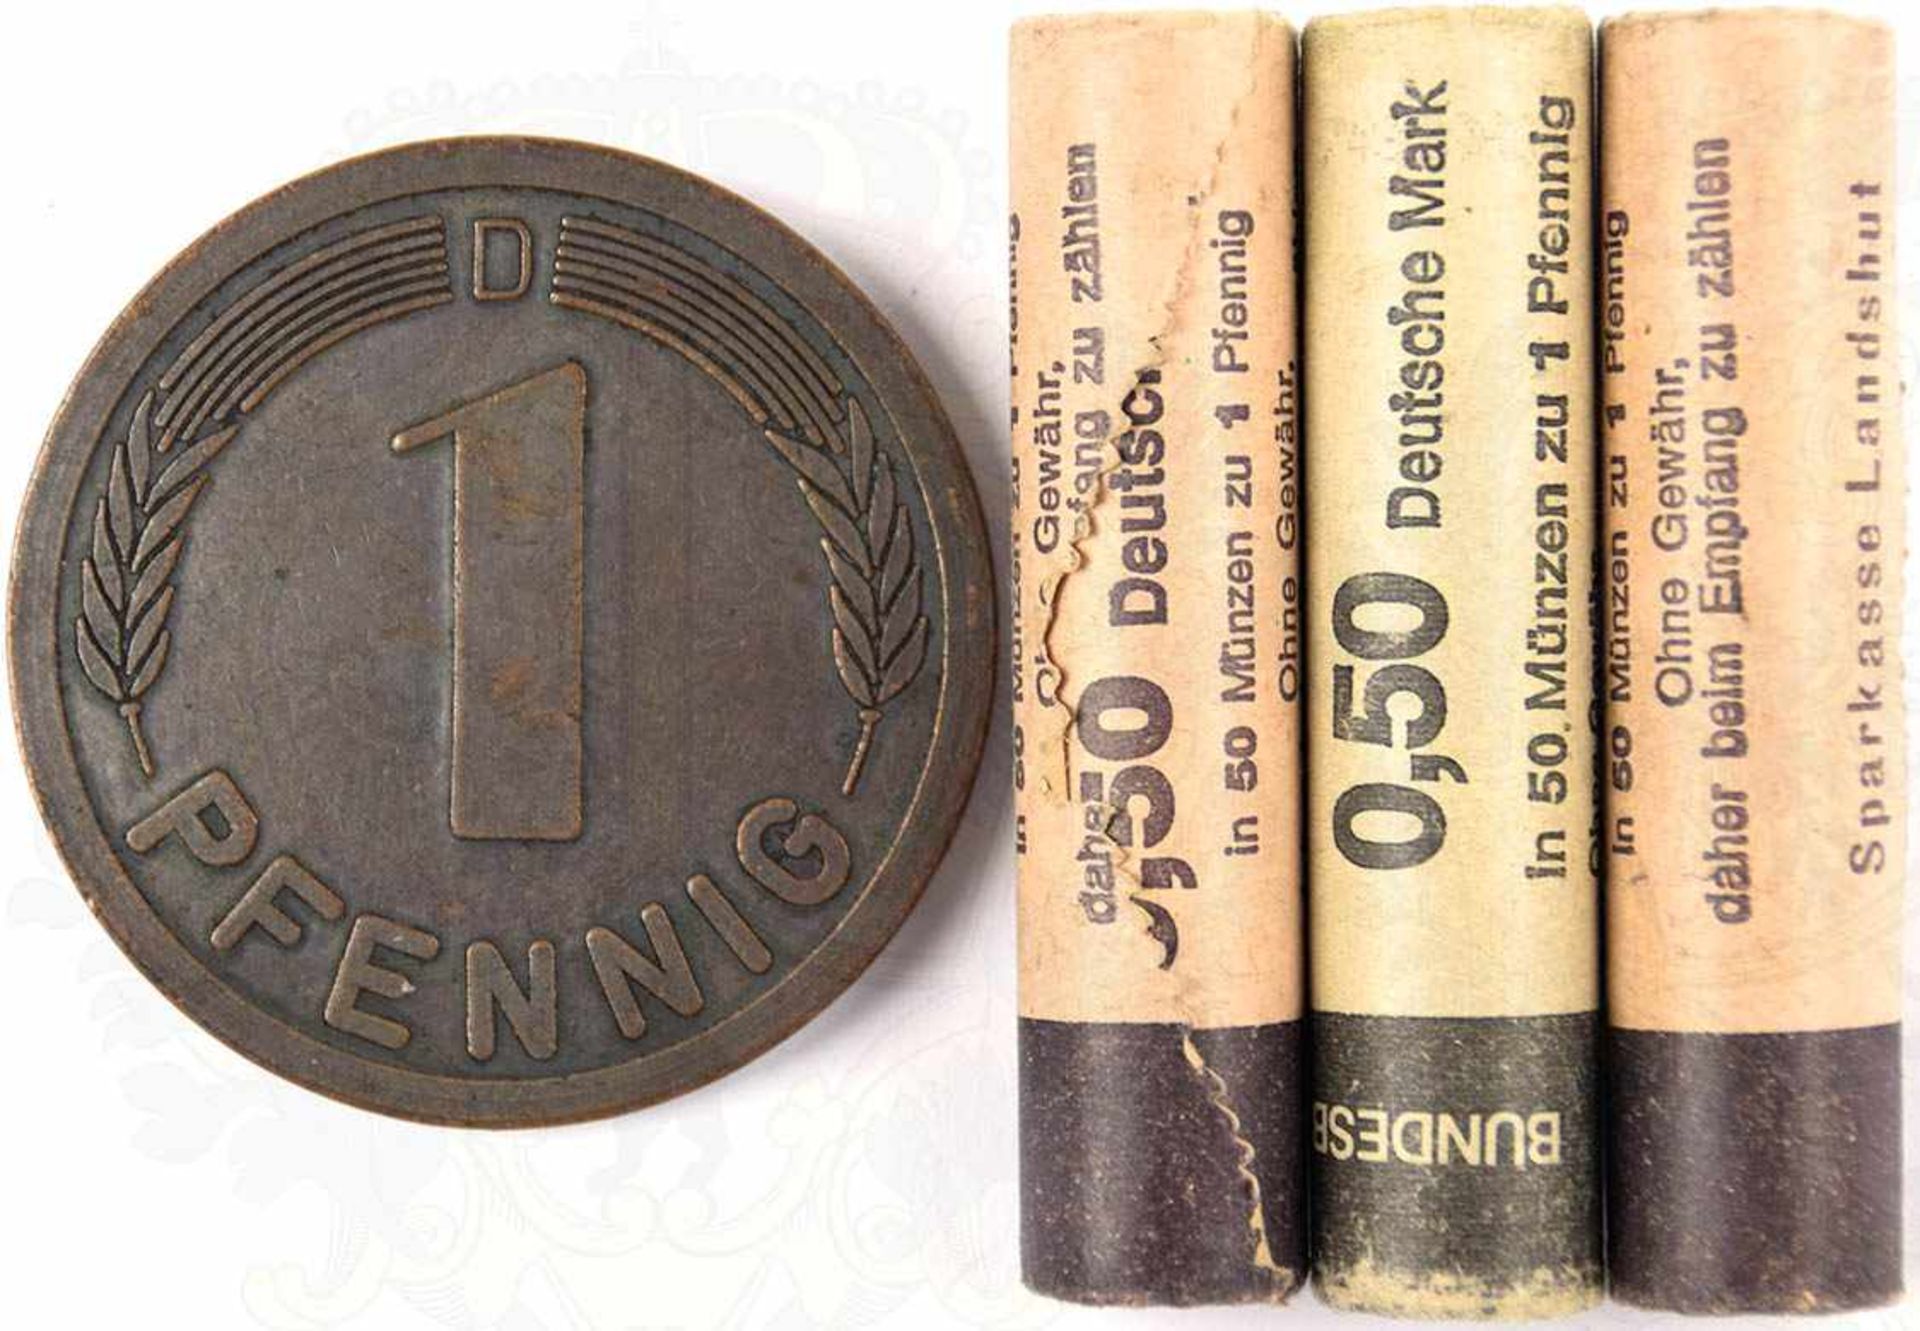 3 MÜNZROLLEN mit 1-Pf. Münzen, jew. 50 Stück, 1990/1992, dazu Sonderprägung einer 1-Pf. Münze,